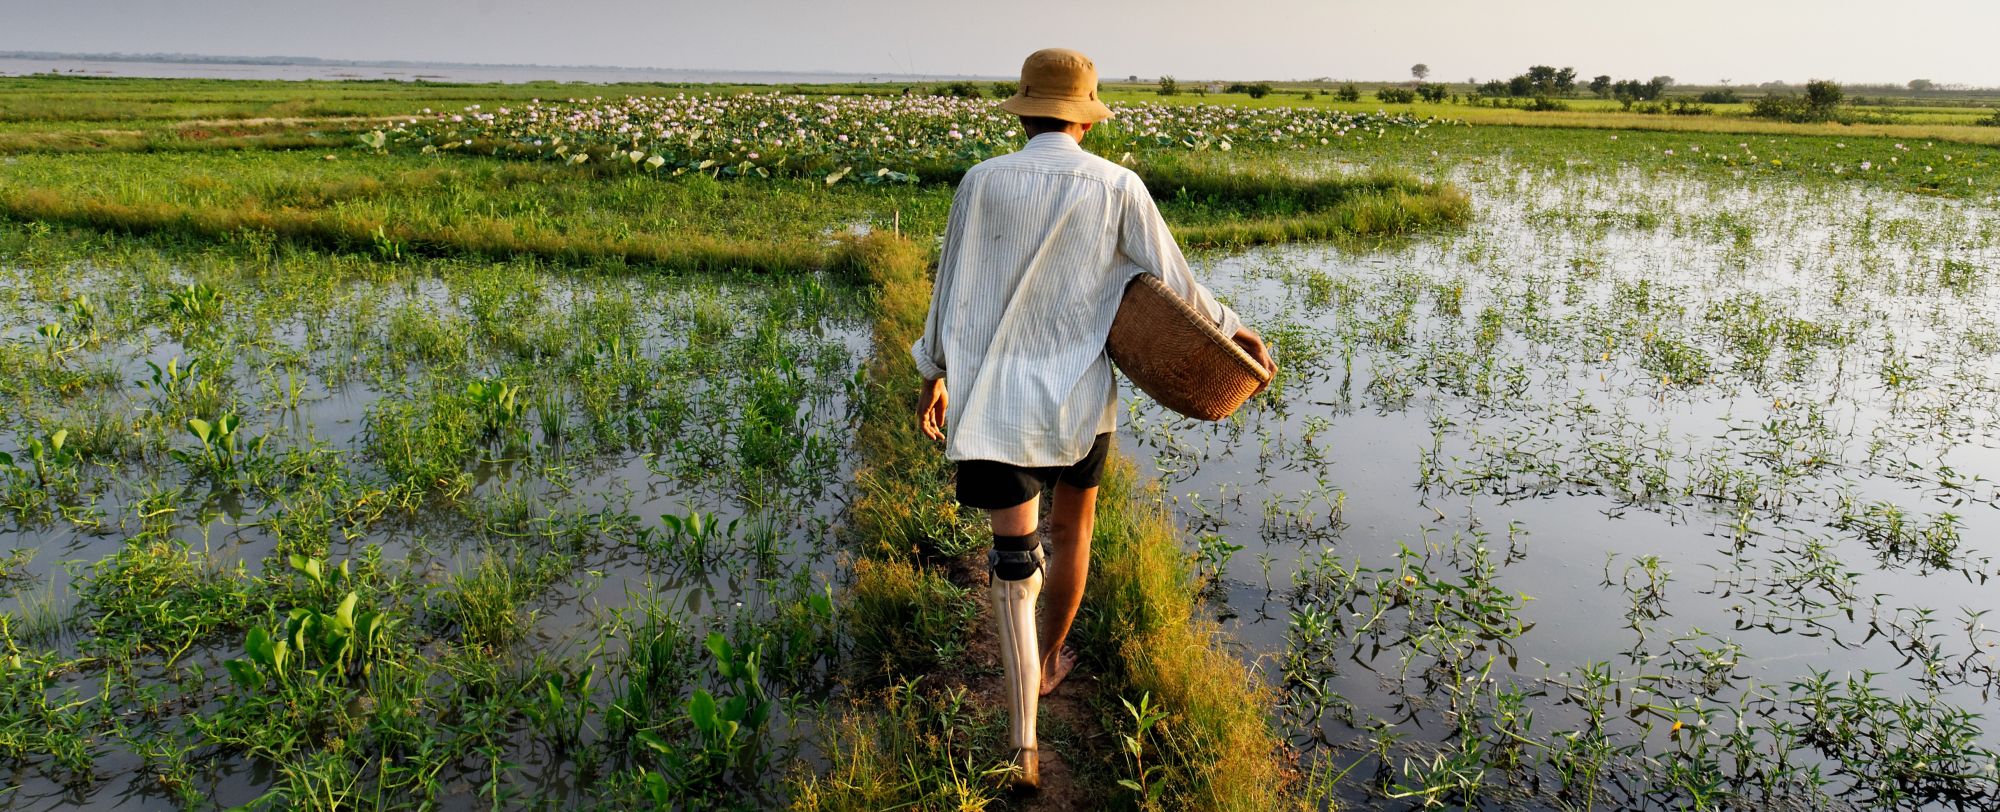 Homme équipé d'une prothèse marche dans des marais